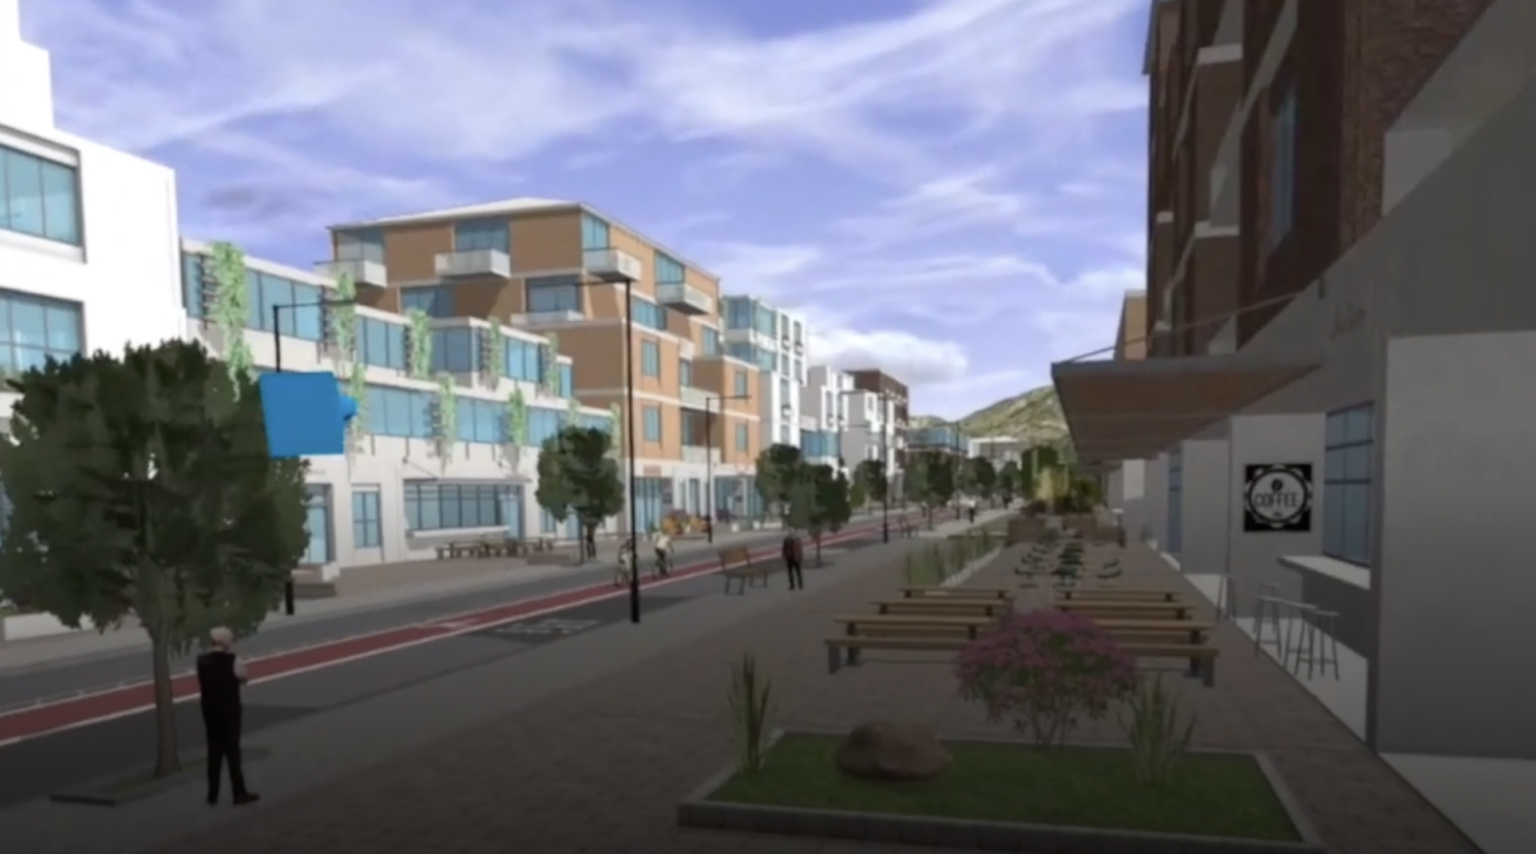 Scena 3D miejskiego kwartału z budynkami, drogą i zielonymi drzewami oglądana przez gogle VR